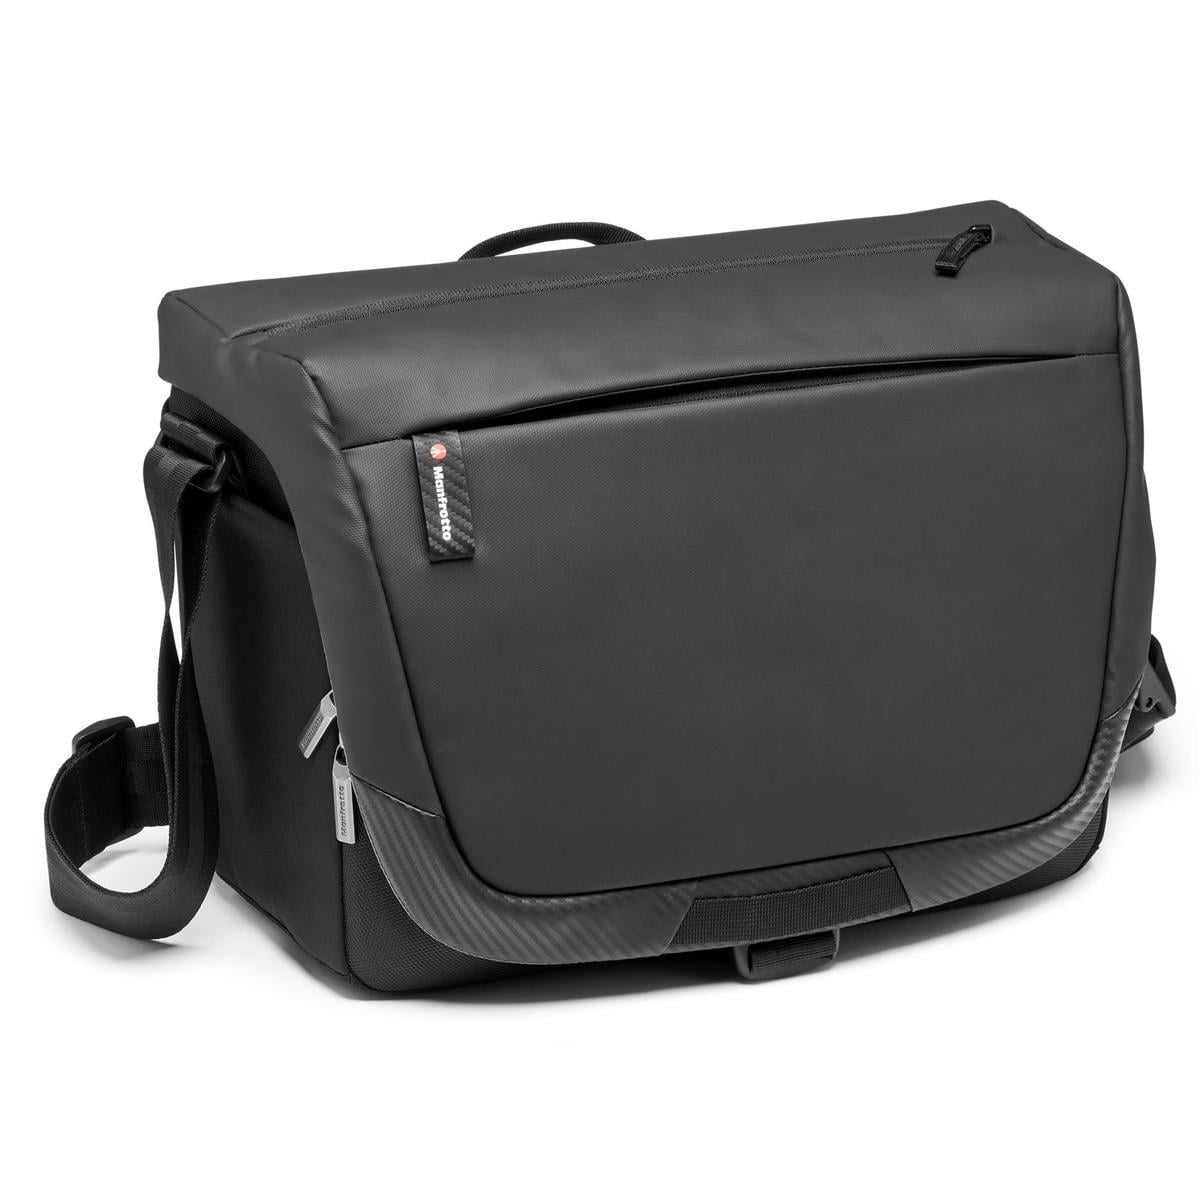 Serrated amplitude Aftale Manfrotto Advanced II Messenger Shoulder Bag for DSLR/CSC Camera, 14"  Laptop Compartment, Medium, Black - Walmart.com